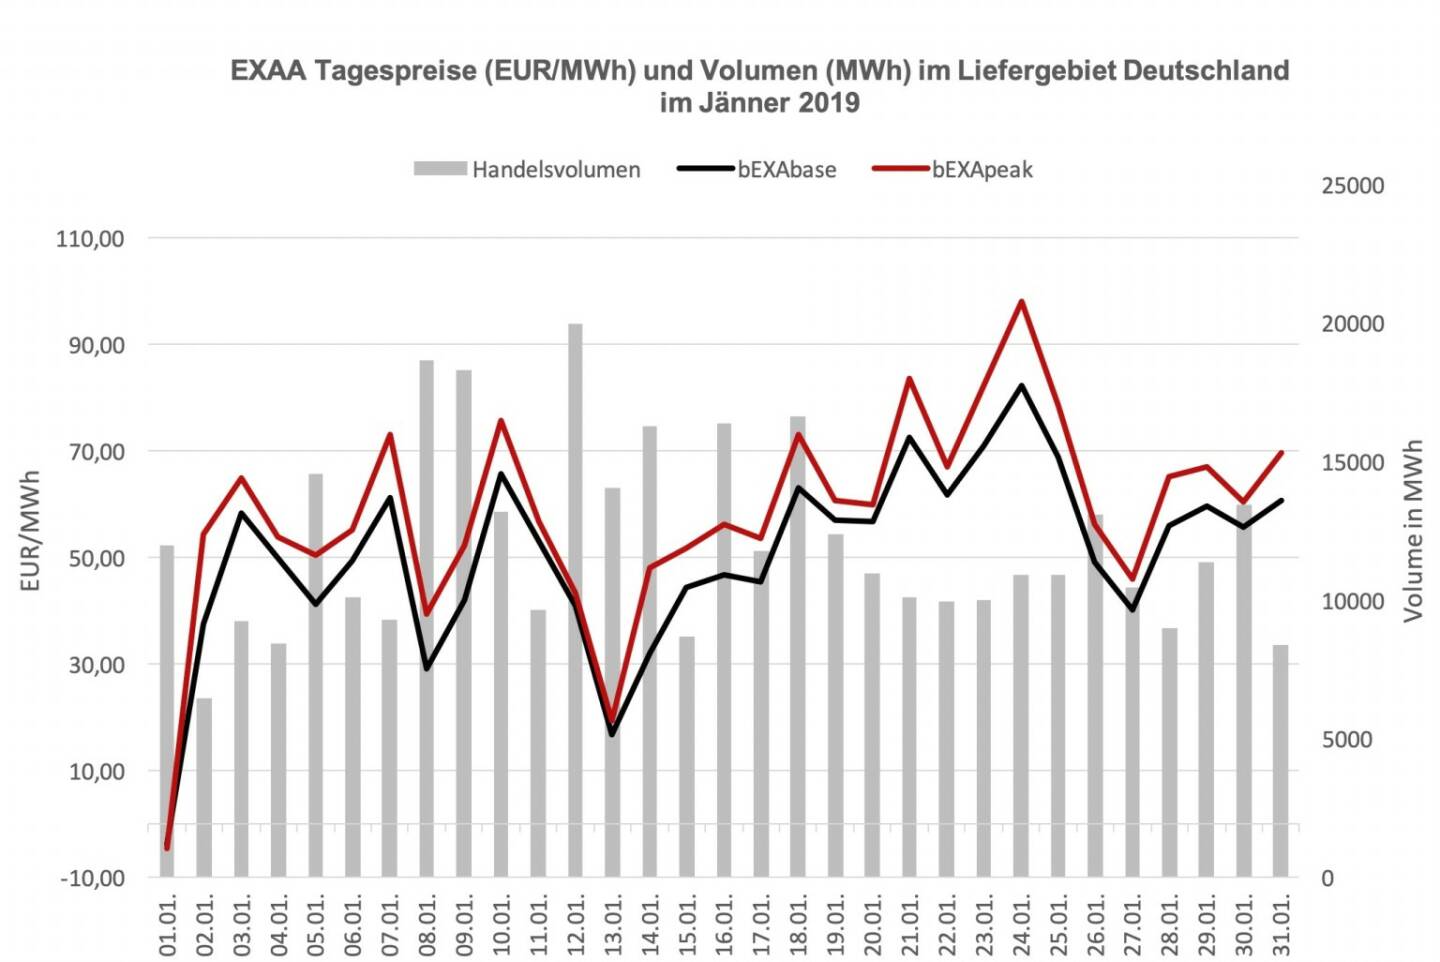 EXAA Tagespreise (EUR/MWh) und Volumen (MWh) im Liefergebiet Deutschland im Jänner 2019